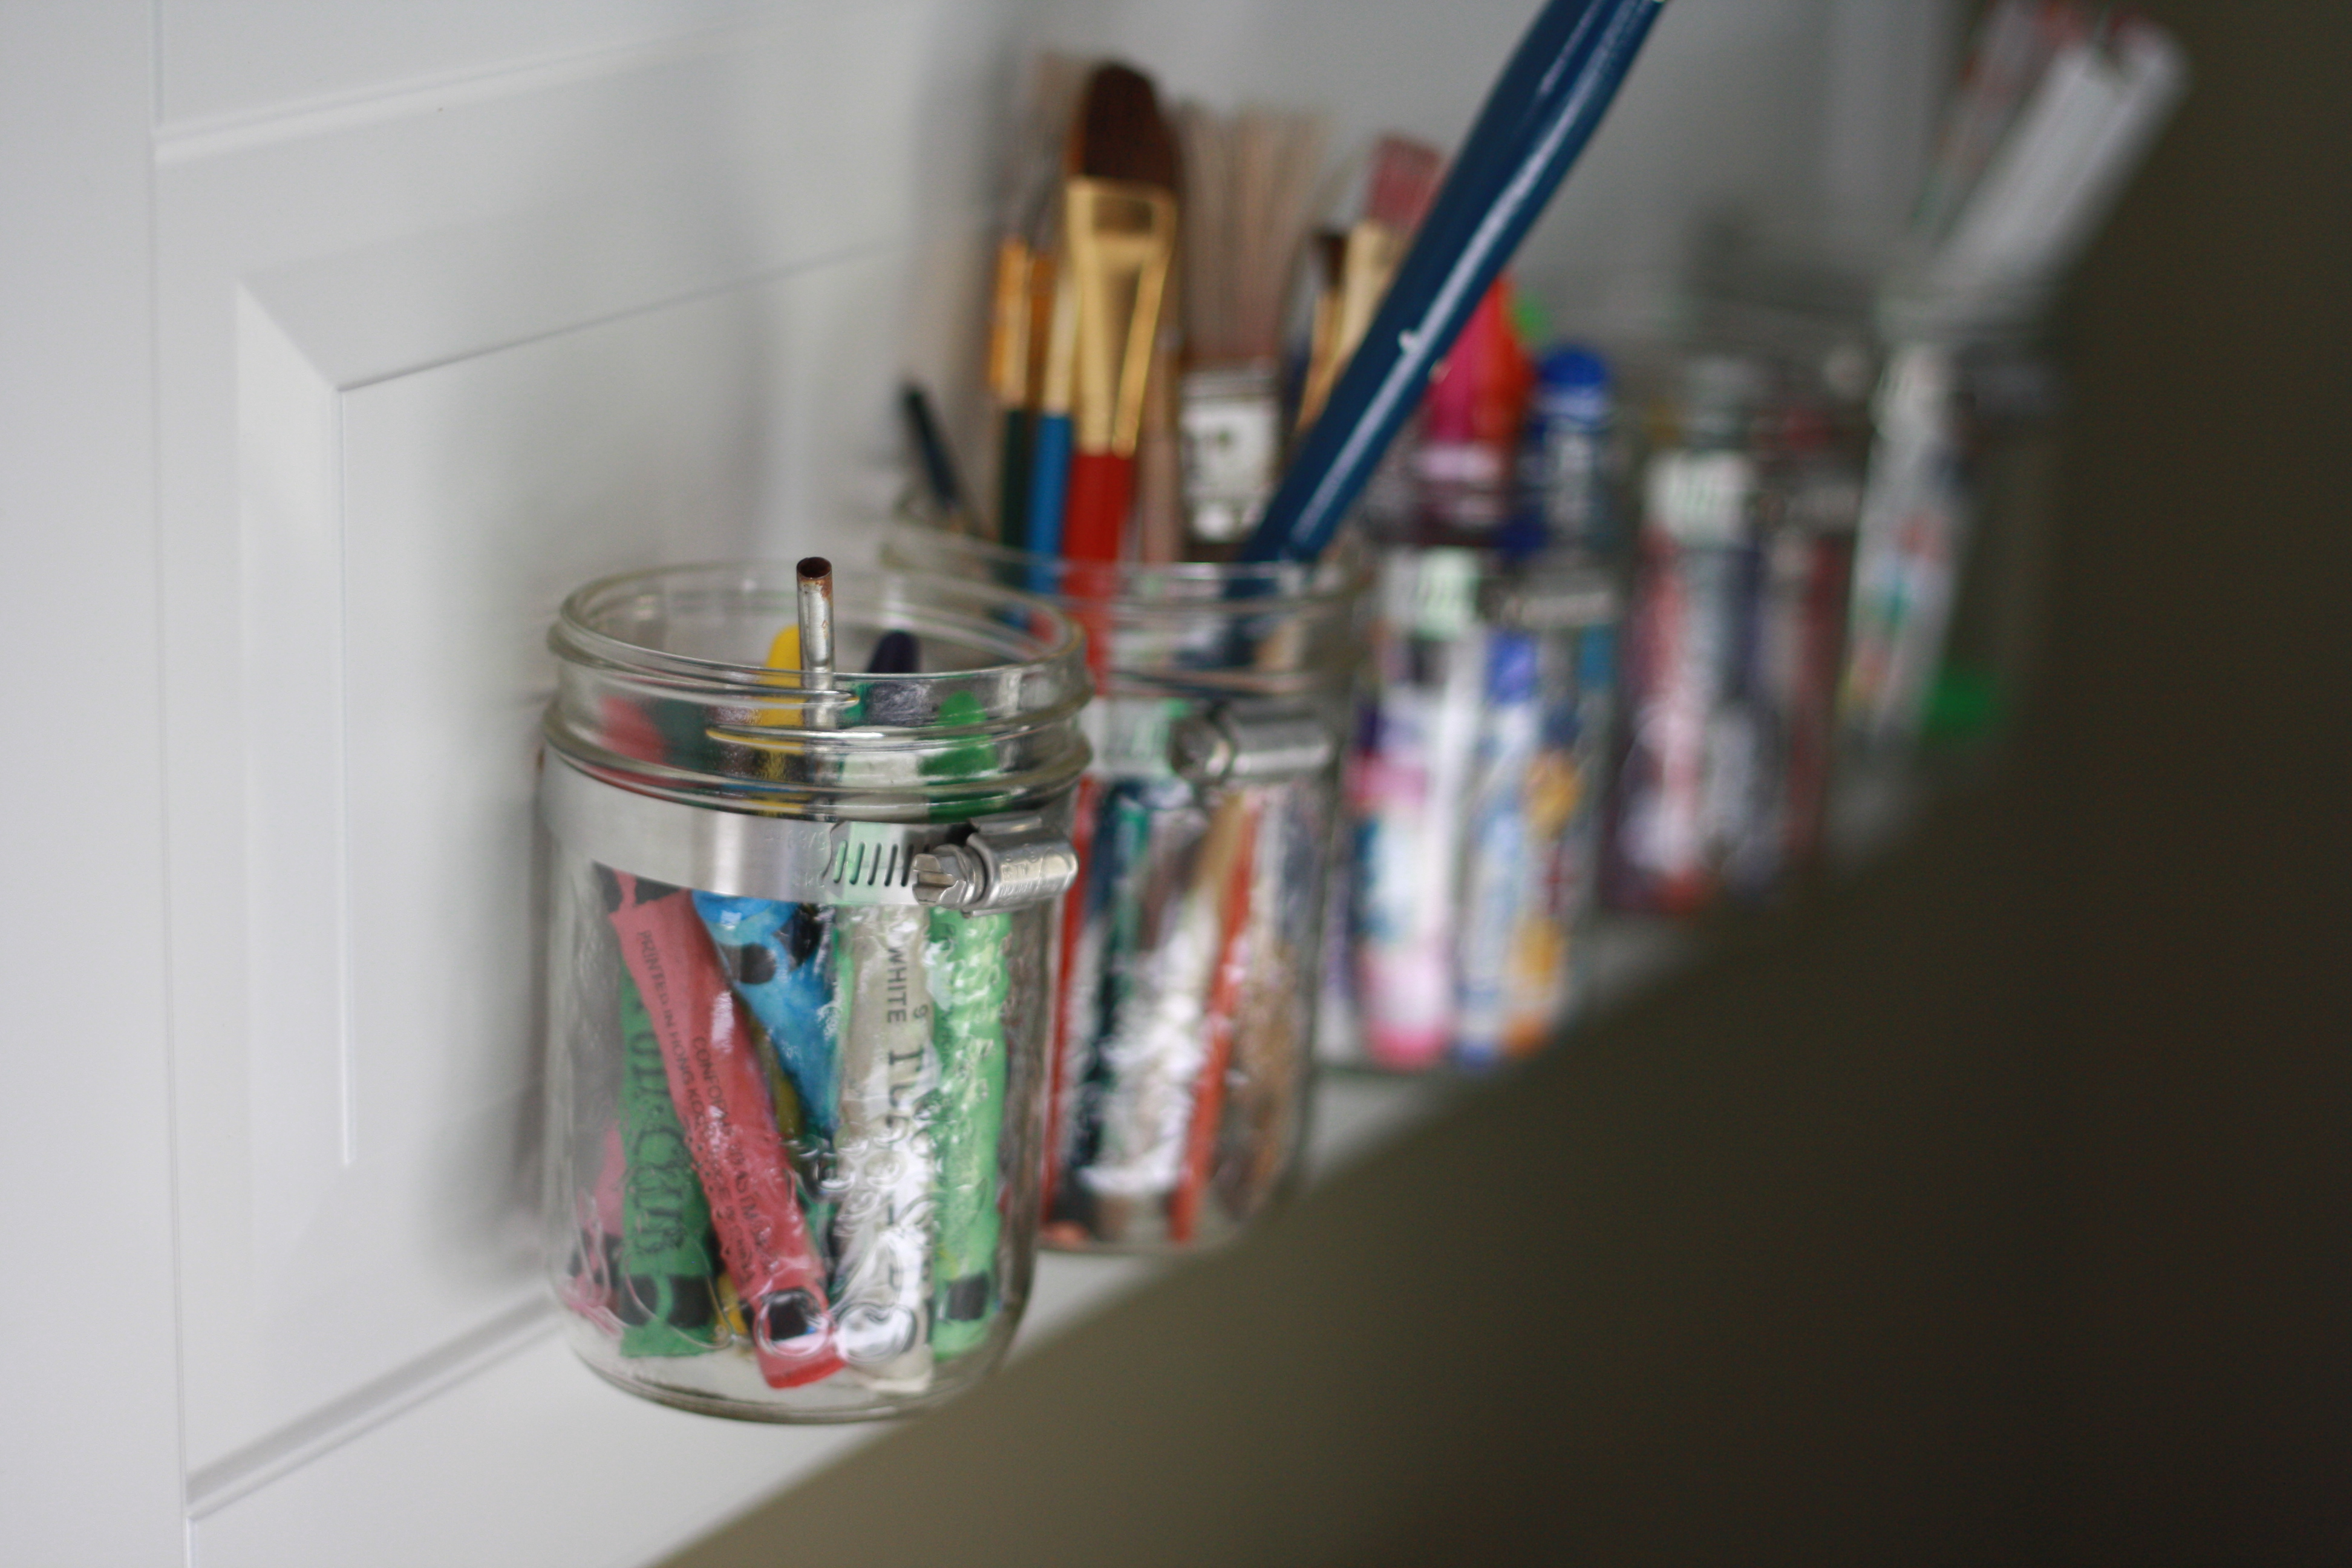 Inspiring Homeschool Room Ideas: Art Supply Mason Jars